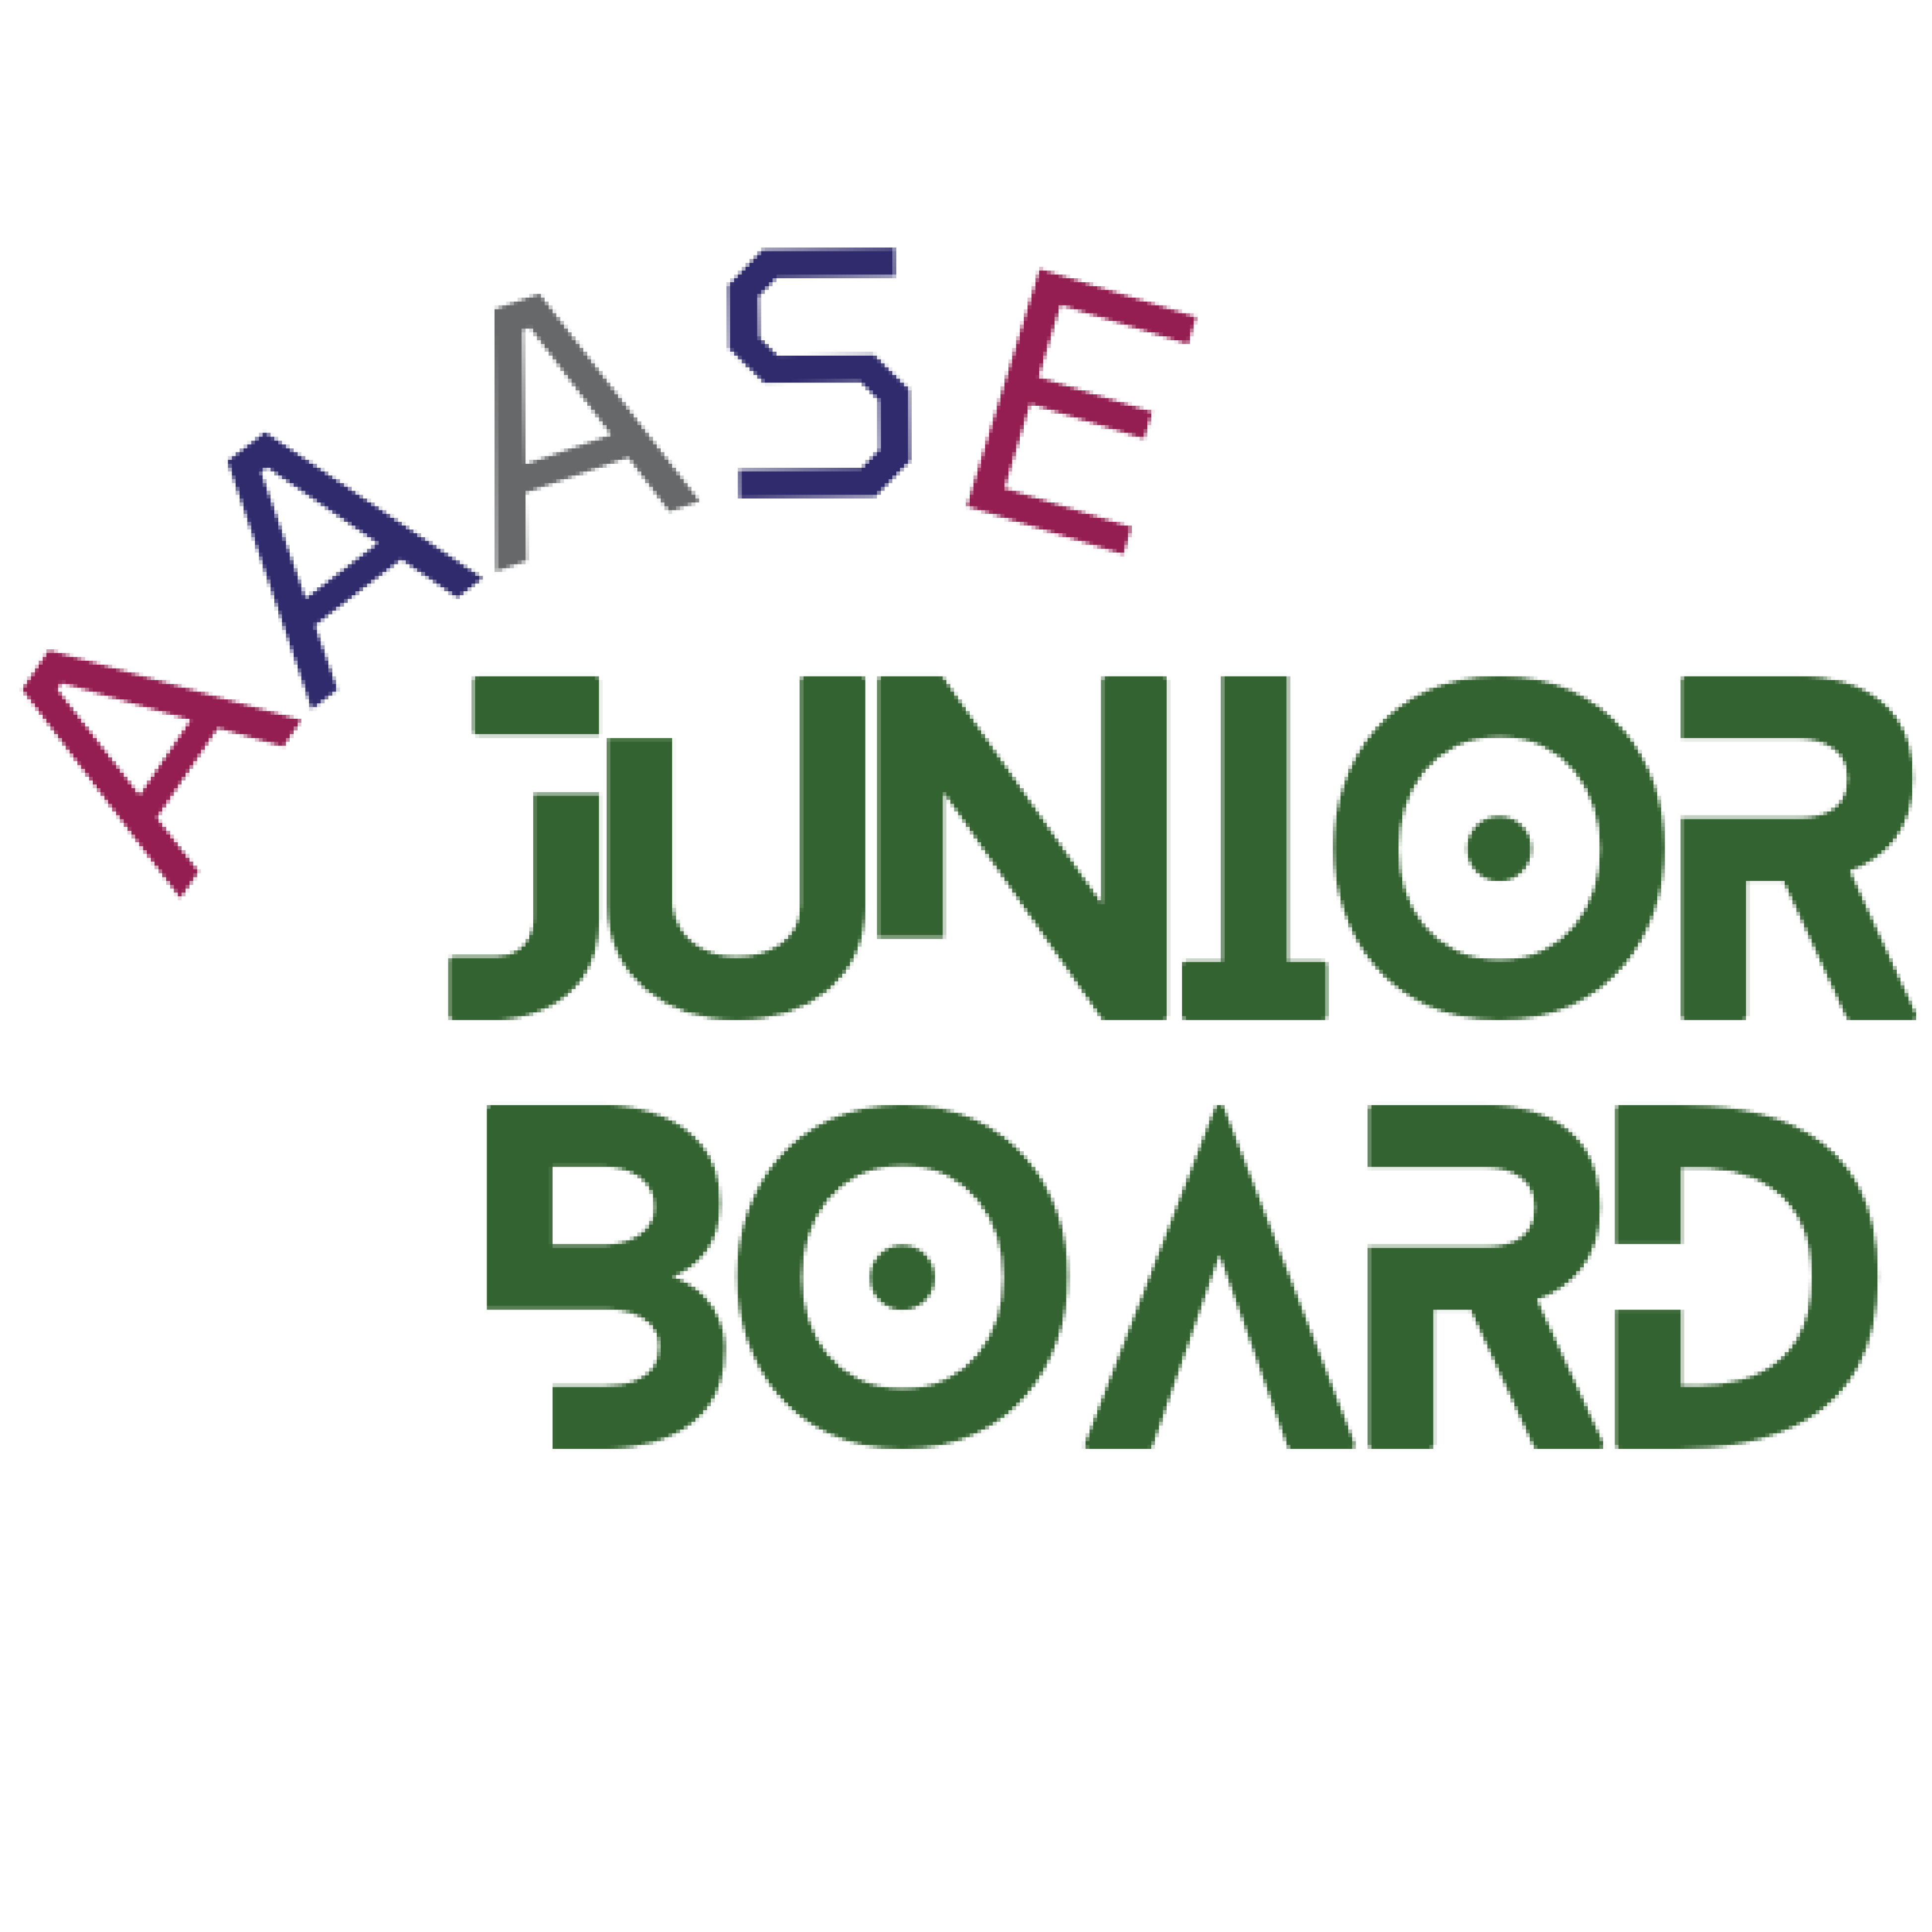 AAASE logo